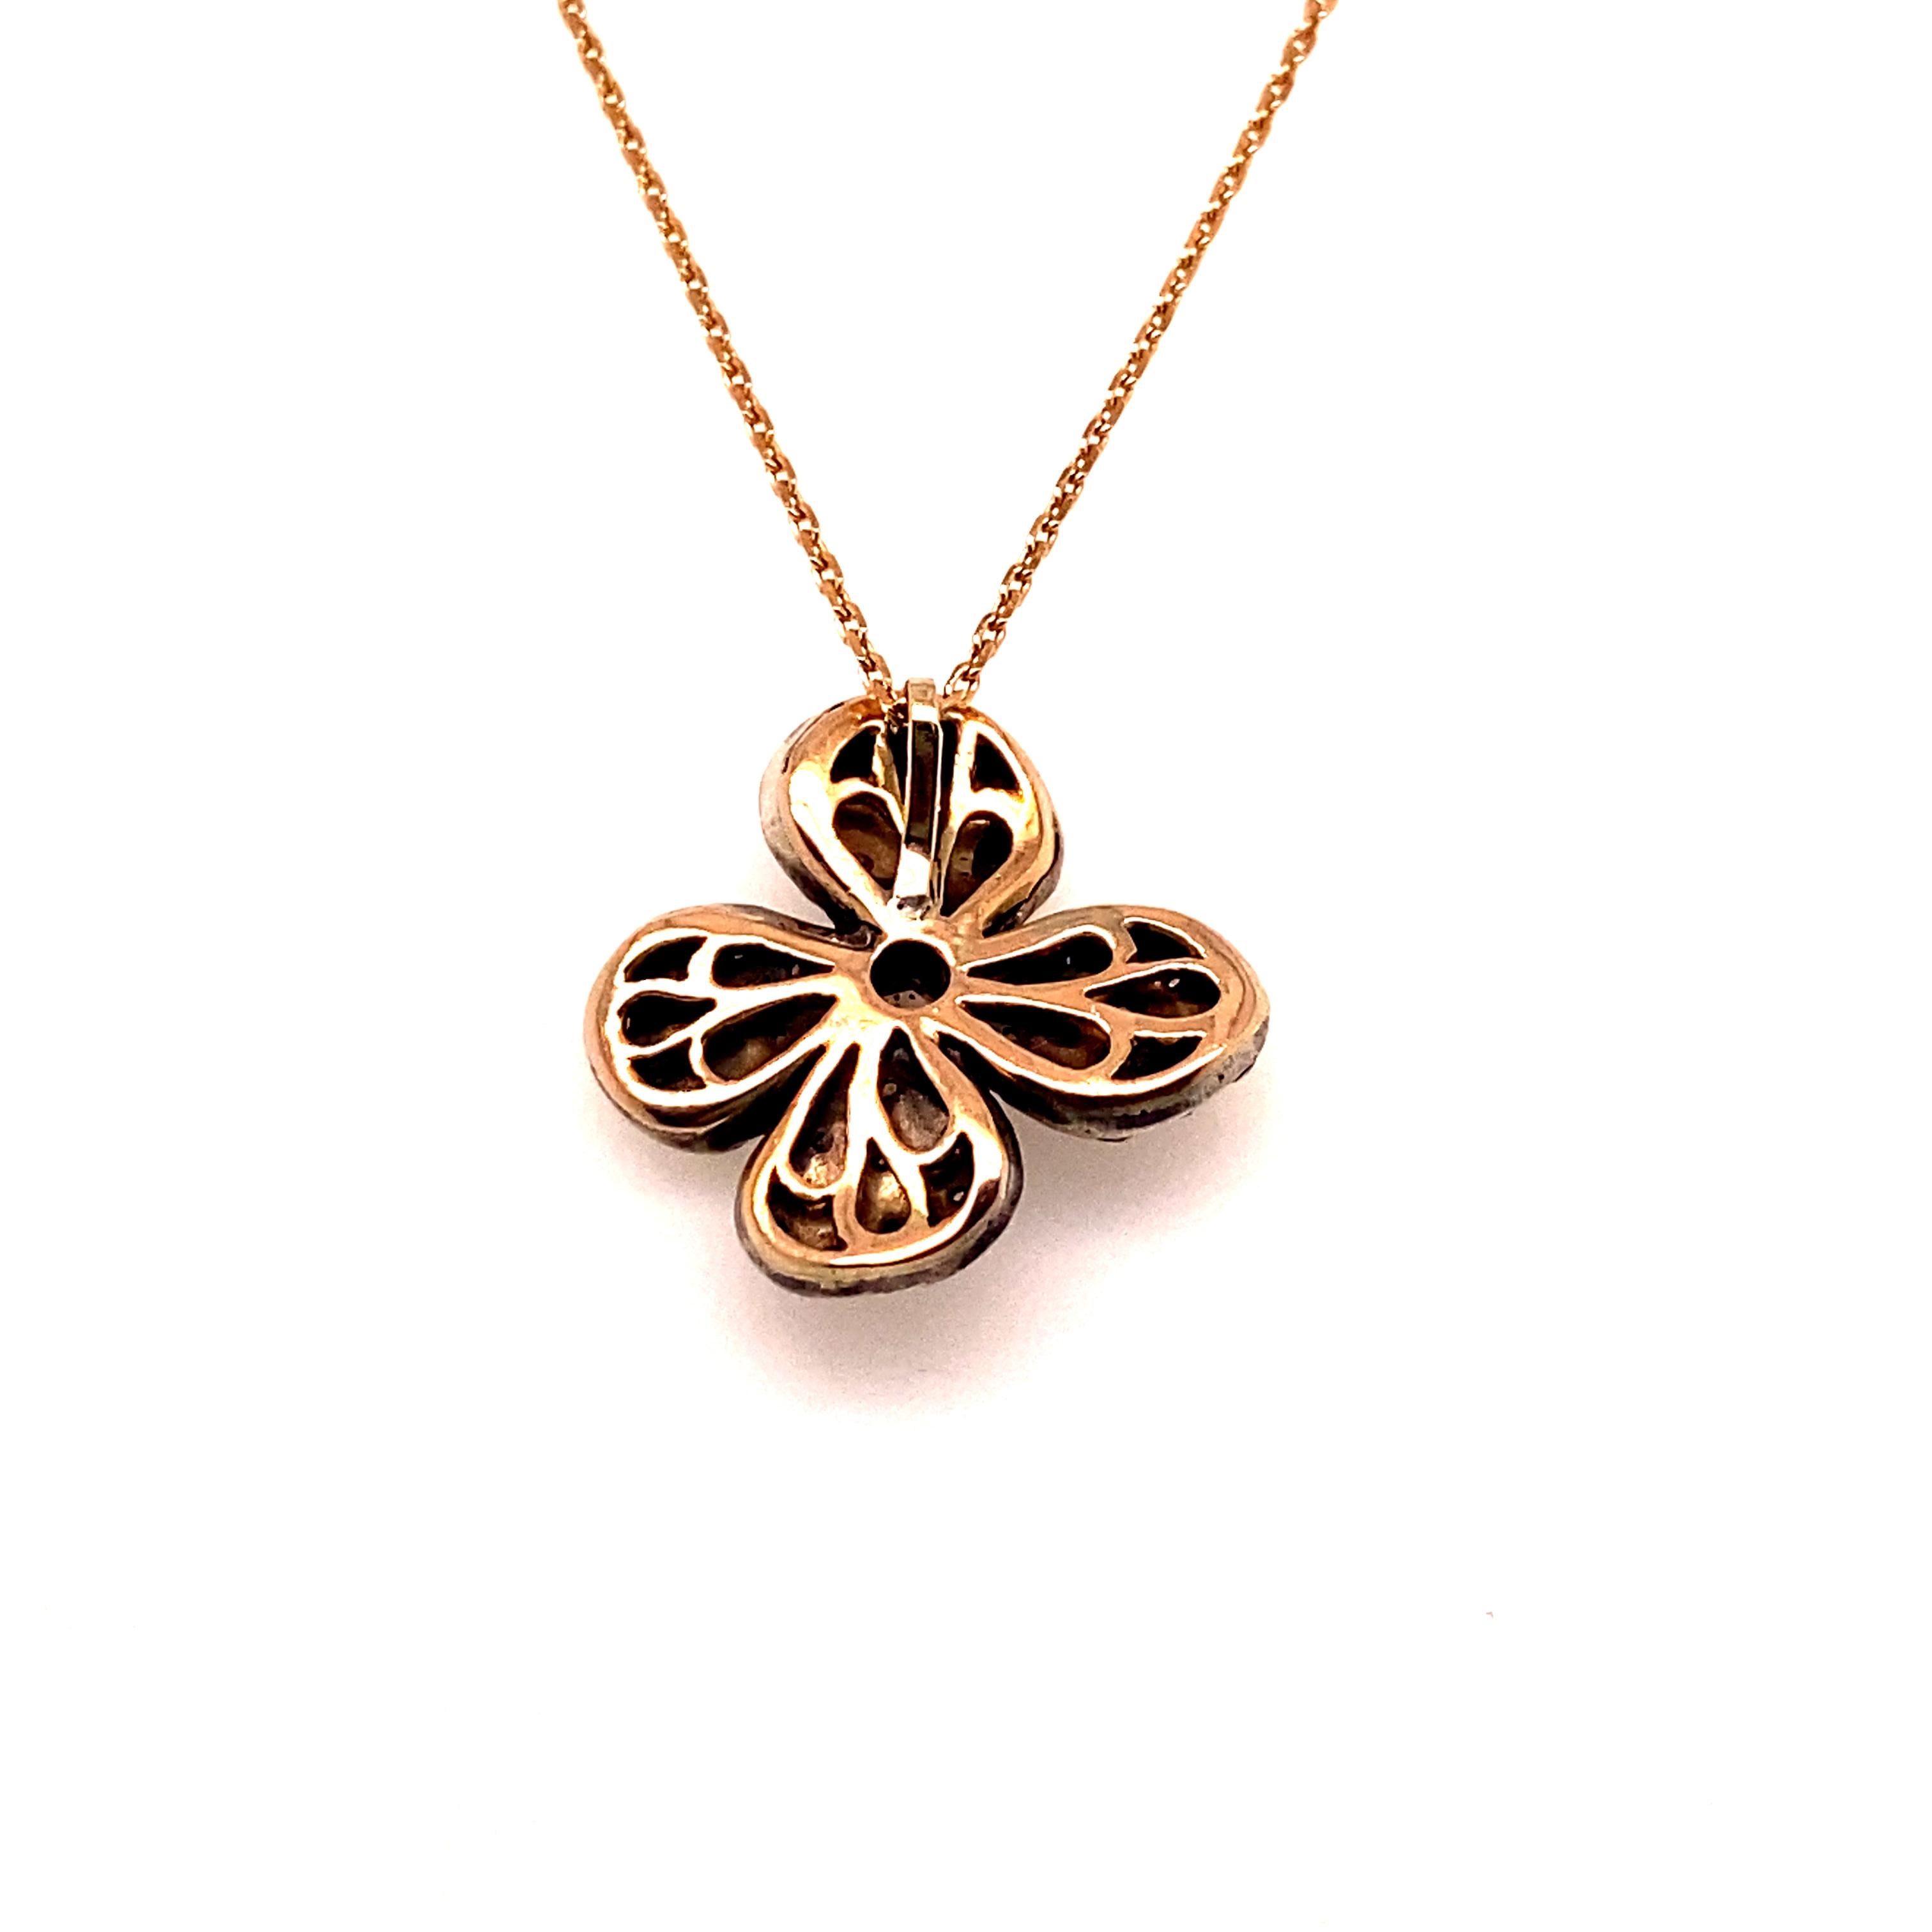 Ce pendentif et cette chaîne en forme de fleur, créés de main de maître en or rose 9 carats et en argent 925, sont sertis d'une poignée de diamants blancs taillés en rose soigneusement sélectionnés. 

Le pendentif en forme de fleur mesure 2